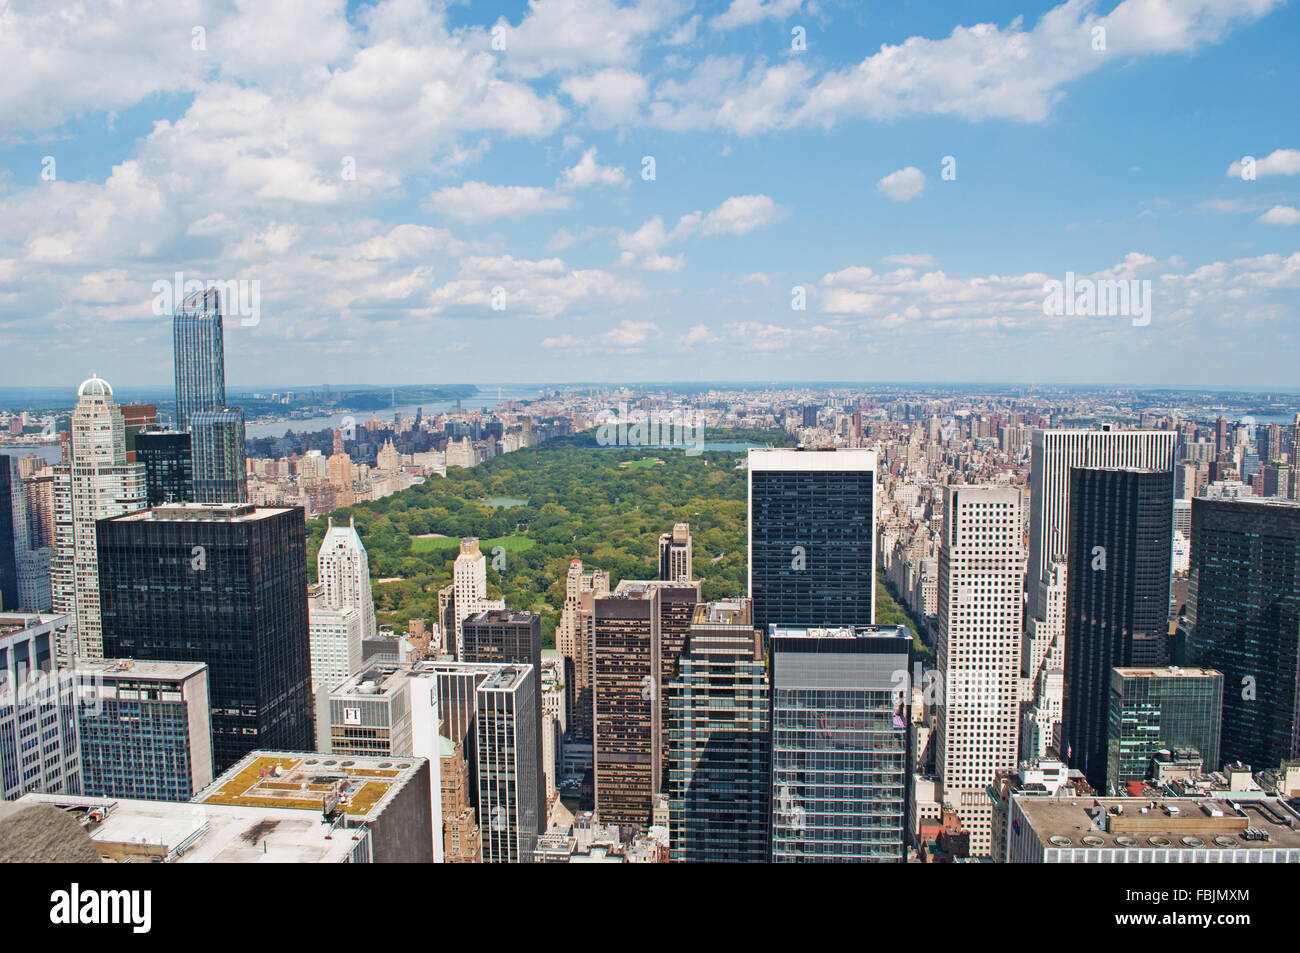 New York, Stati Uniti d'America: vista dello skyline di Manhattan con il Central Park visto dalla parte superiore della roccia, la piattaforma di osservazione del Rockefeller Center Foto Stock